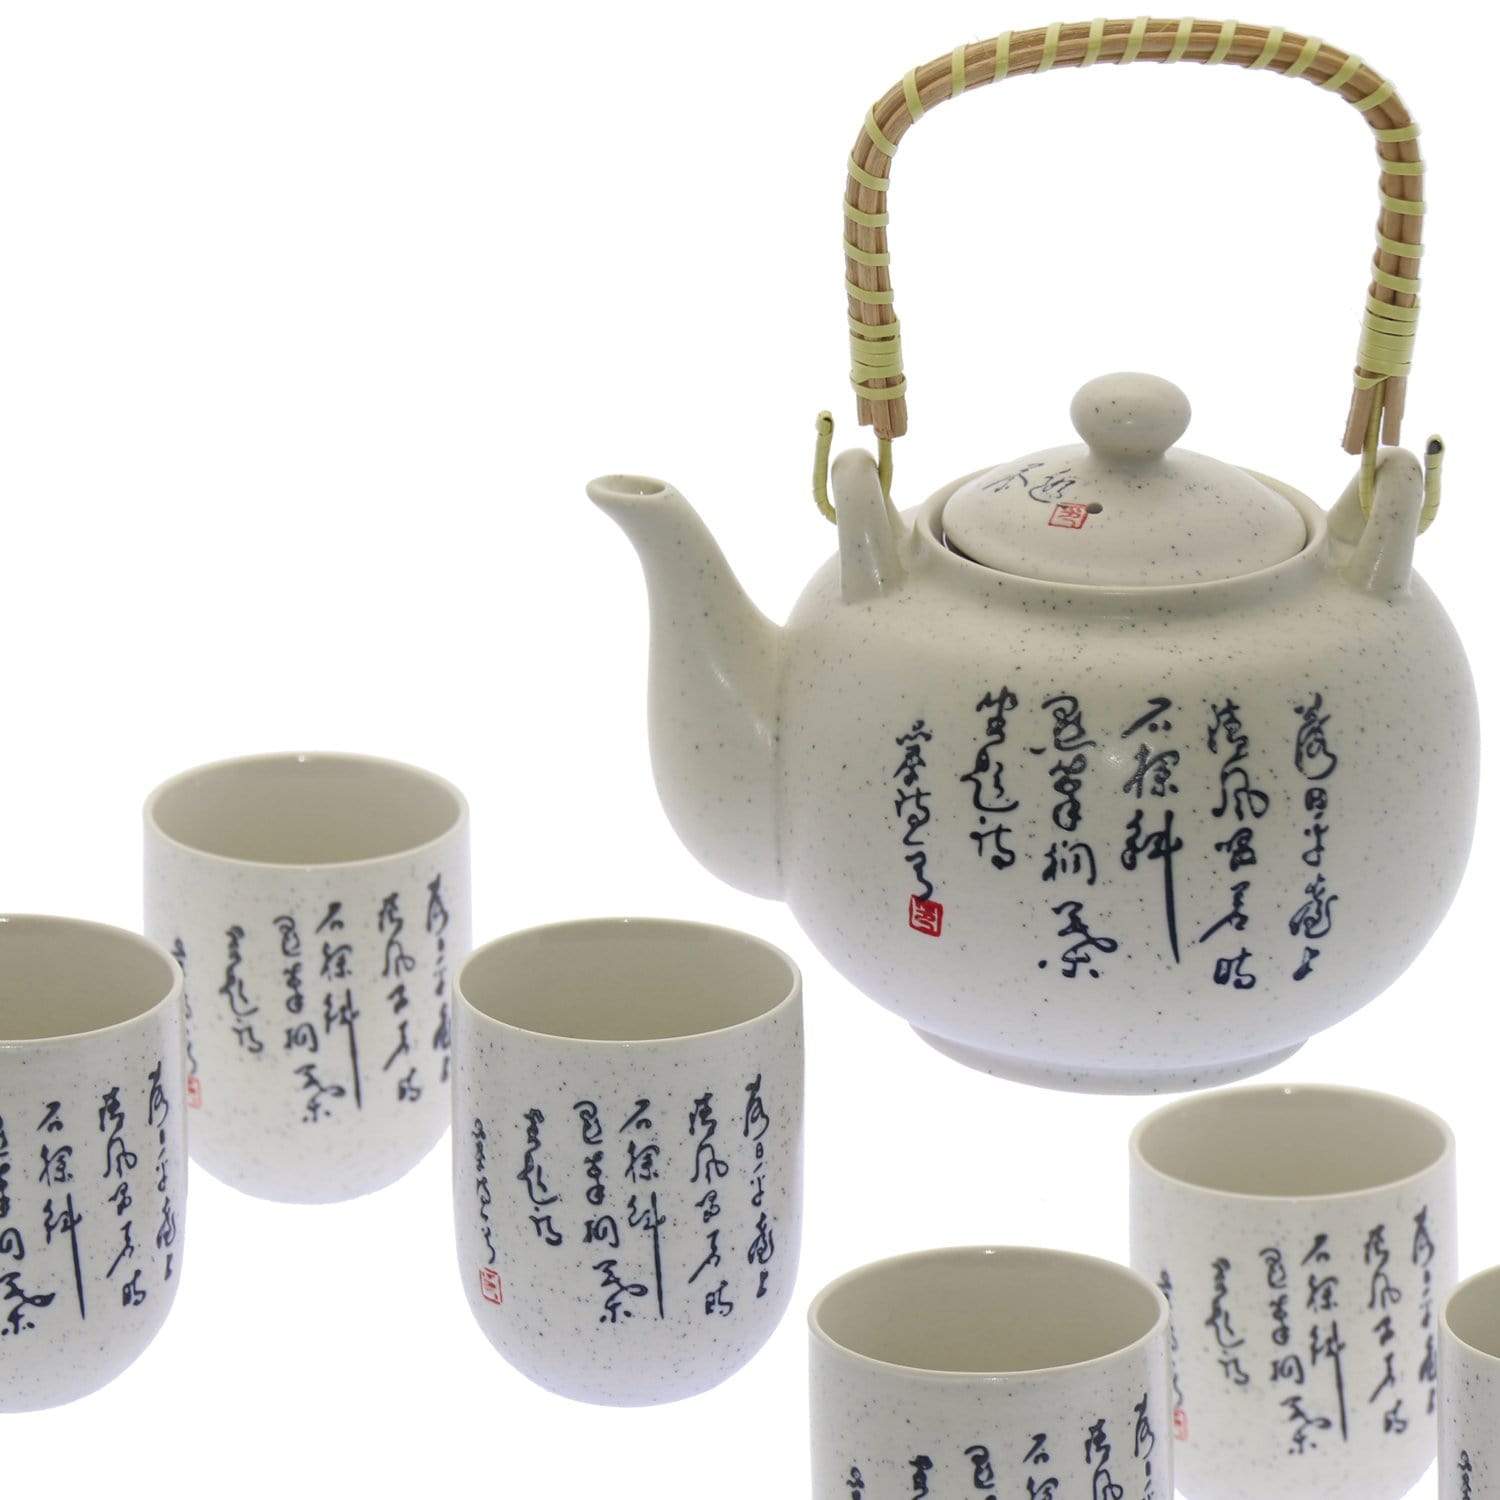 tazza tradizionale giapponese nera di ceramica con coperchio